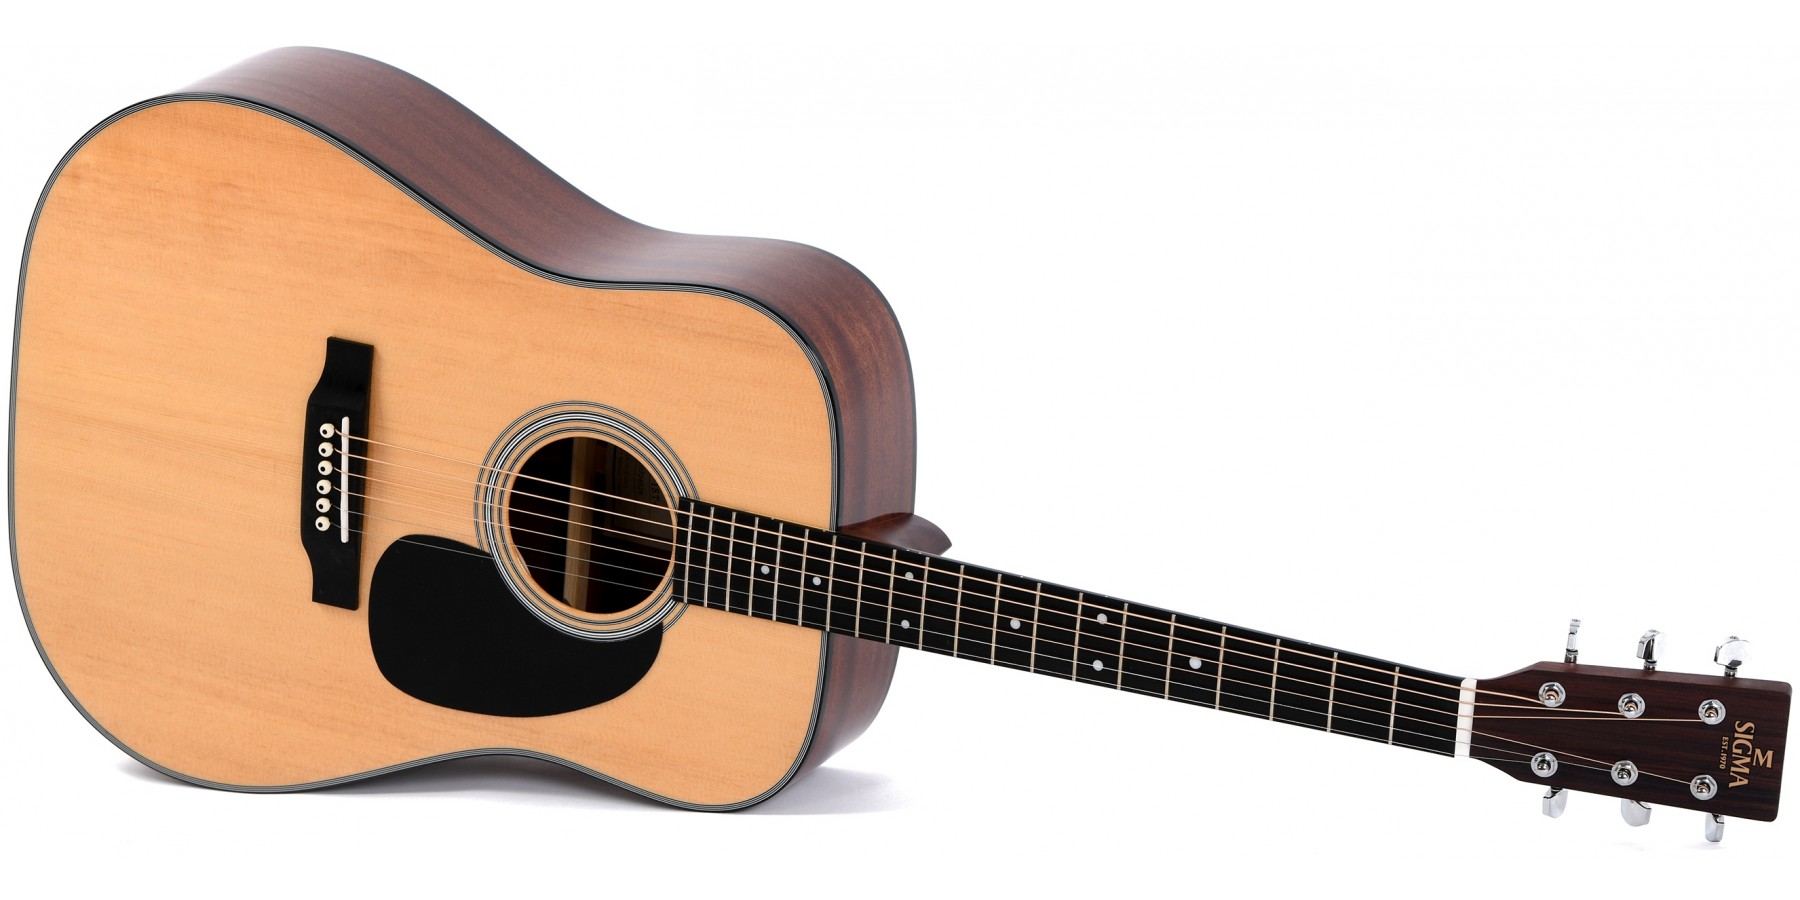 sigma guitars model dm 4 serial number